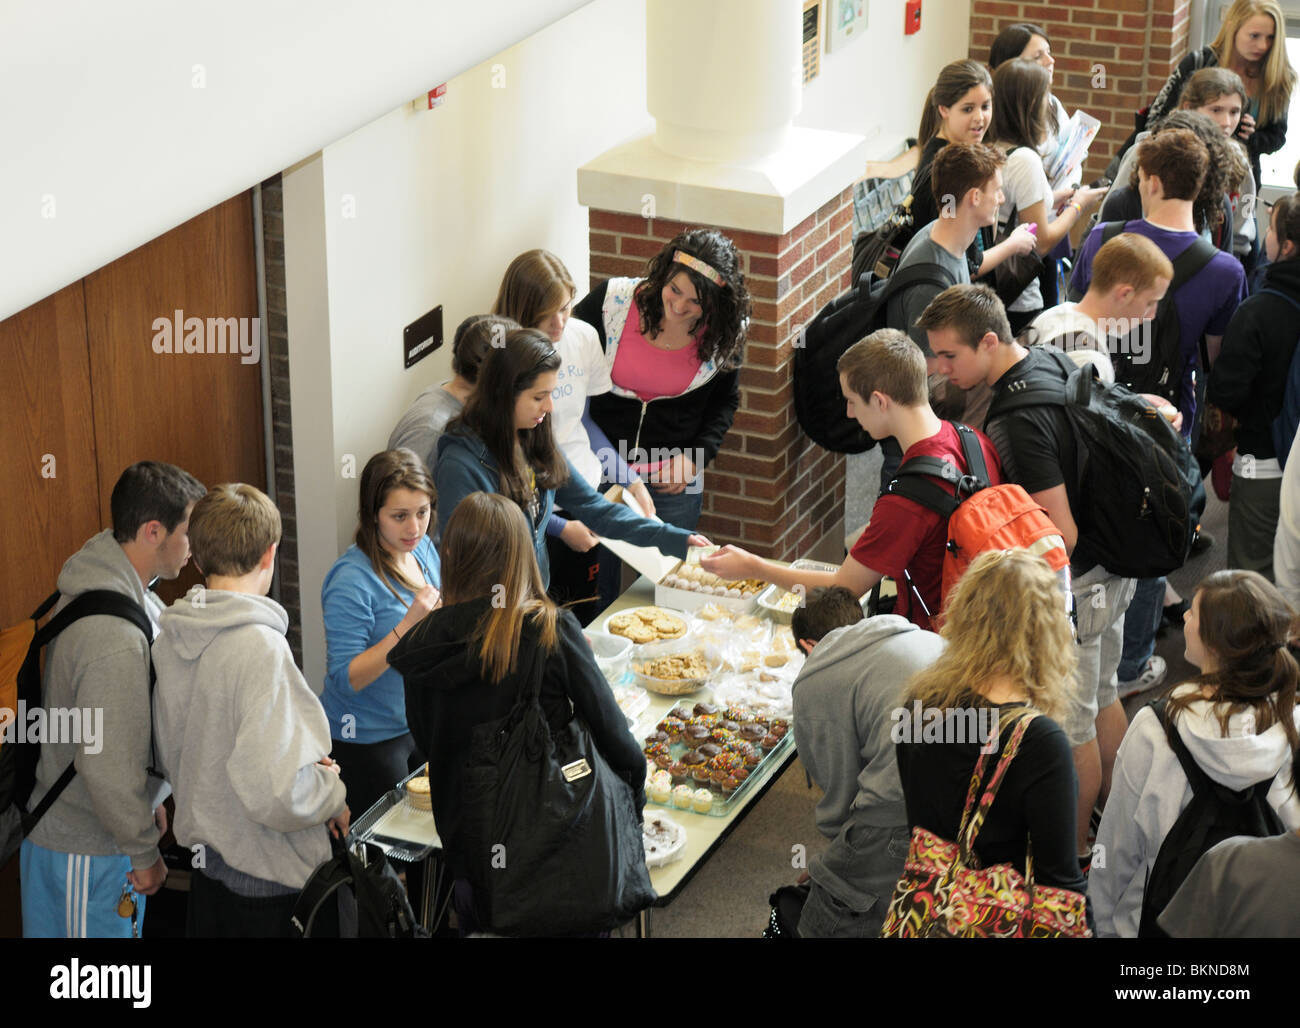 Los estudiantes de secundaria reunidos en la escuela después de una venta de pasteles para recaudar fondos. Foto de stock